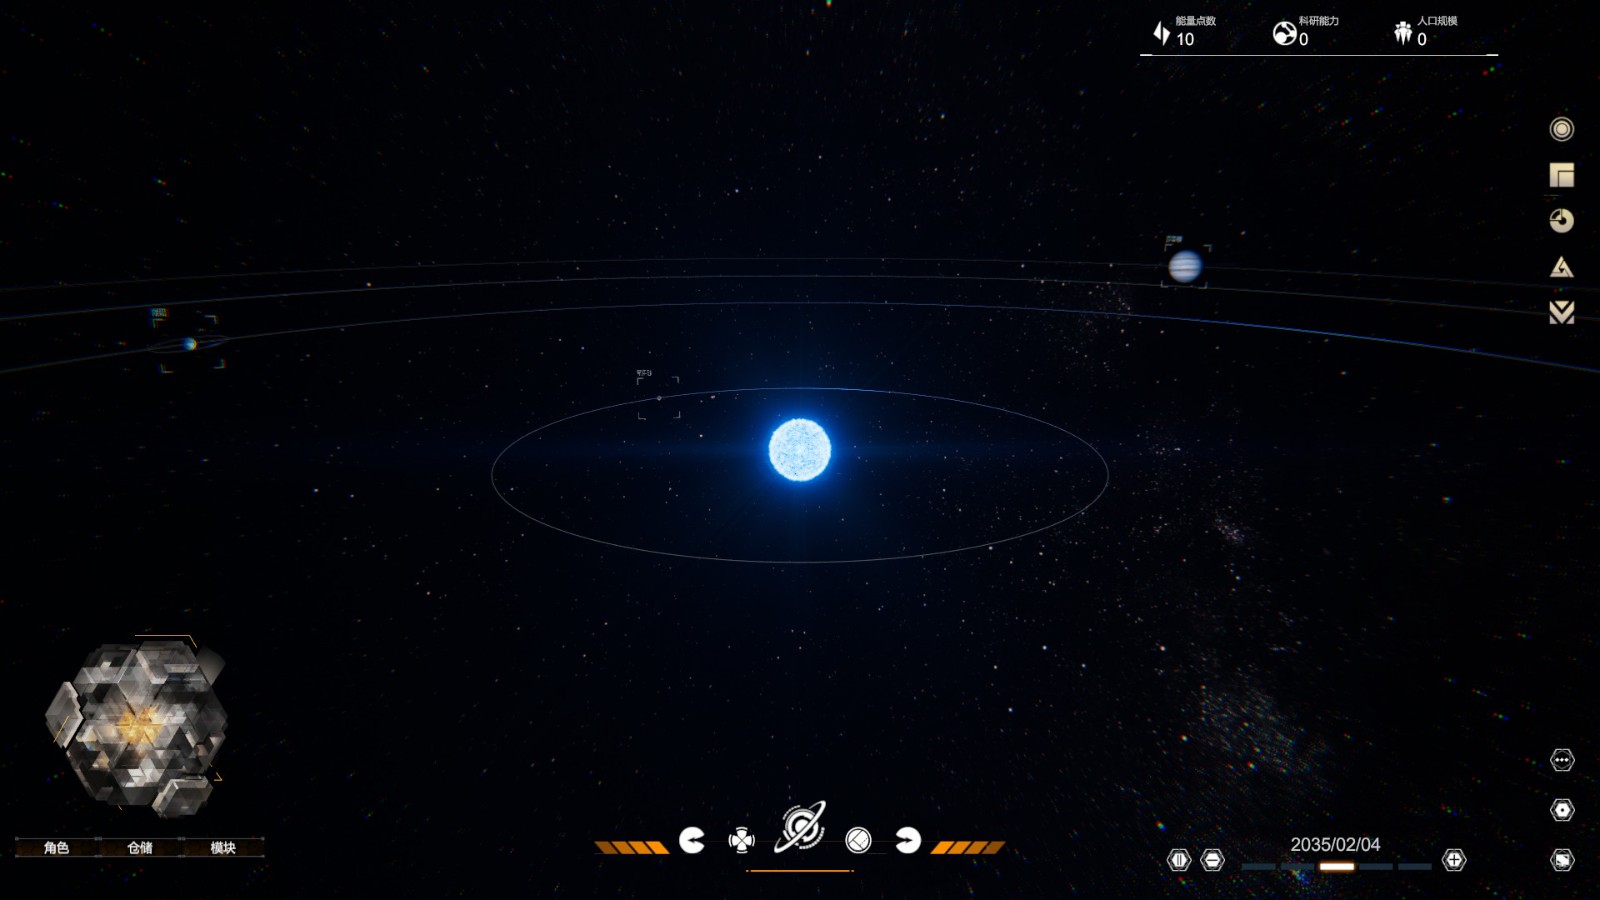 科幻叙事游戏《逐光星火》上架Steam 玩家来引导外星文明 二次世界 第5张